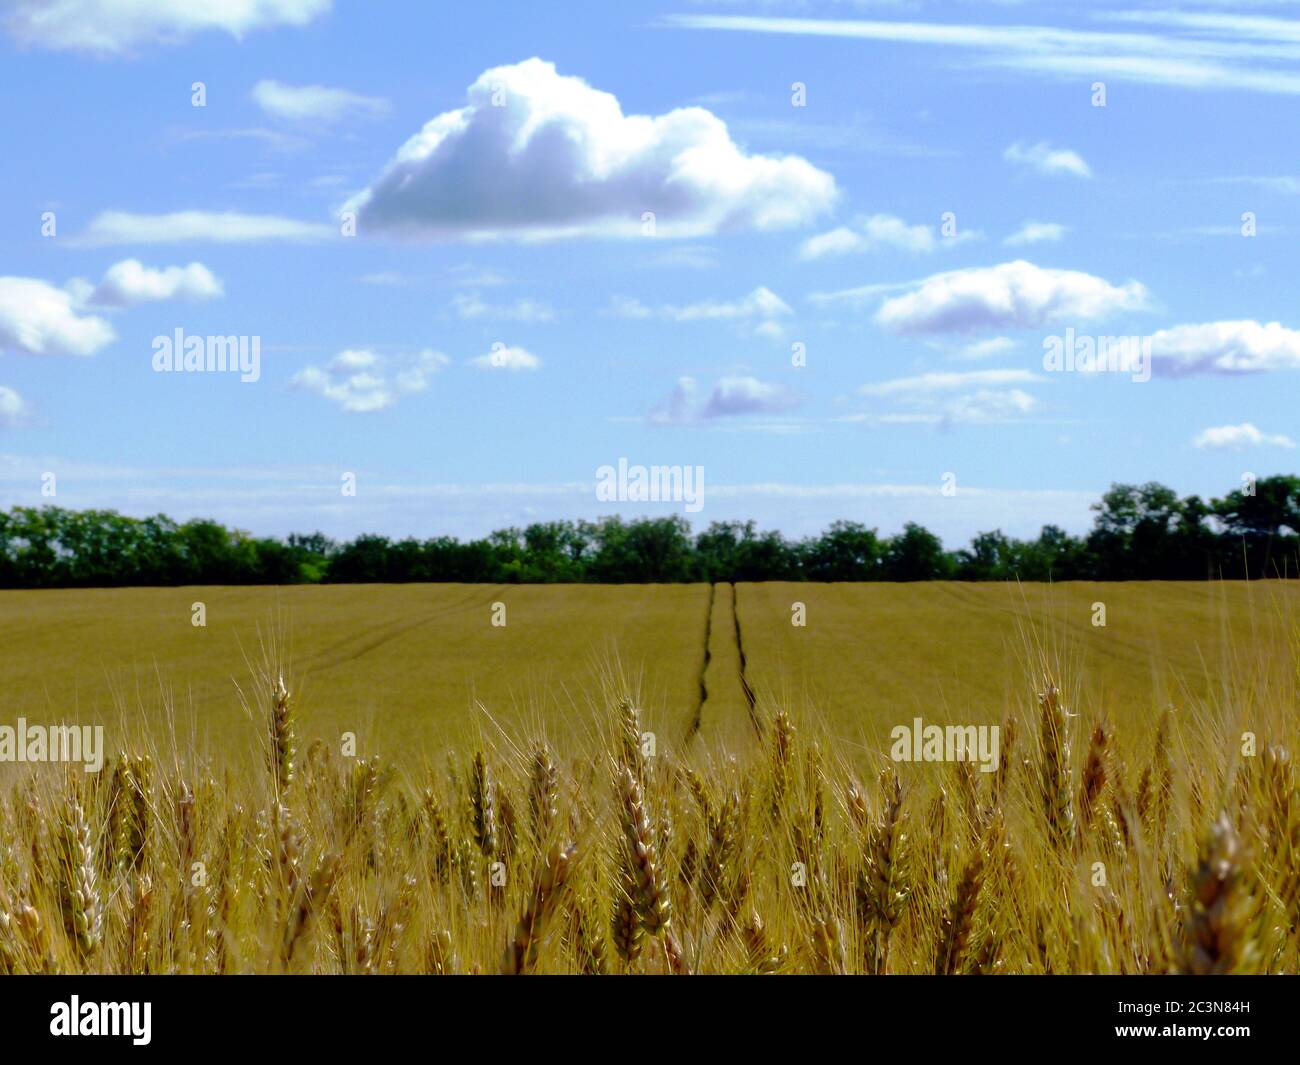 sfondo morbido di campo di grano giallo dorato vista ravvicinata. spighe di raccolto sotto cielo azzurro chiaro e nuvole bianche. agricoltura e produzione alimentare concetto. Foto Stock